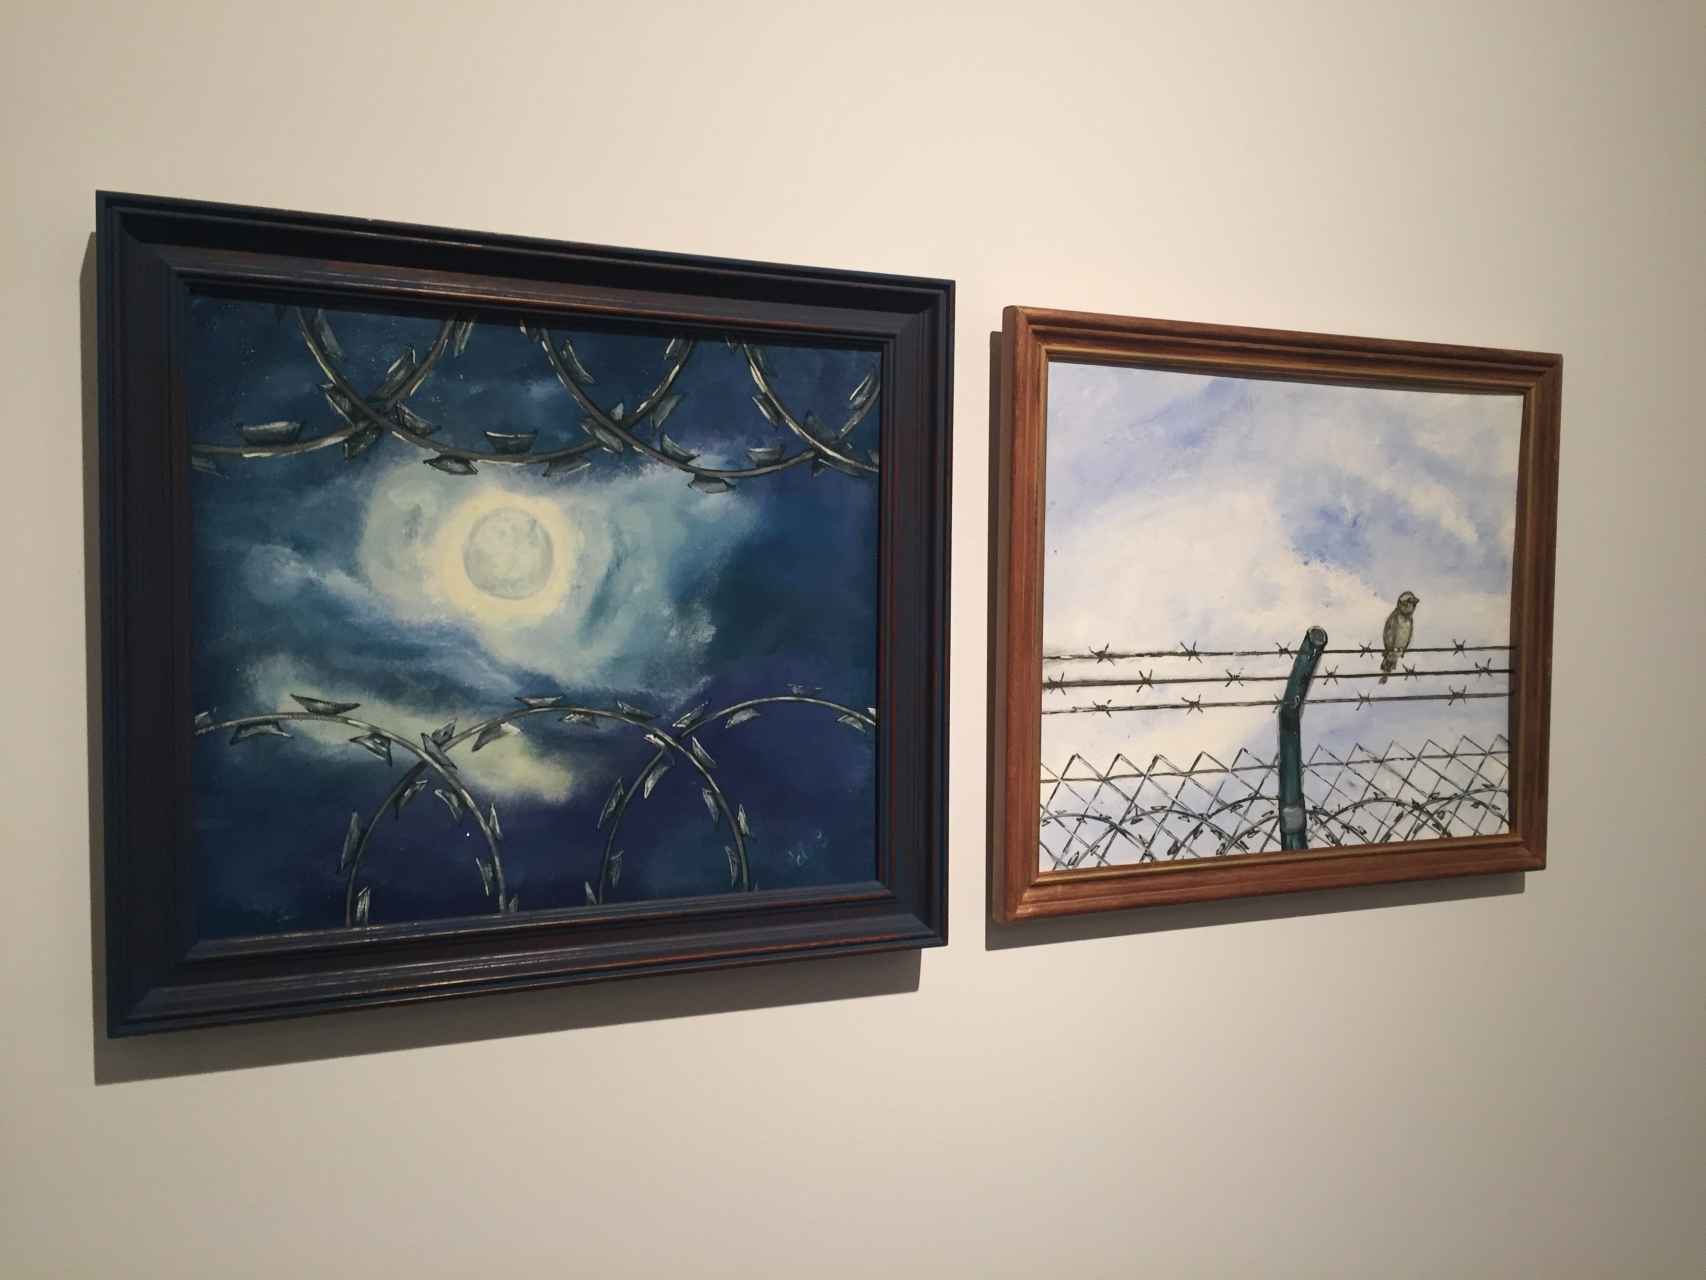 Dos pinturas de los reclusos incluidas en la exposición de Barcelona.